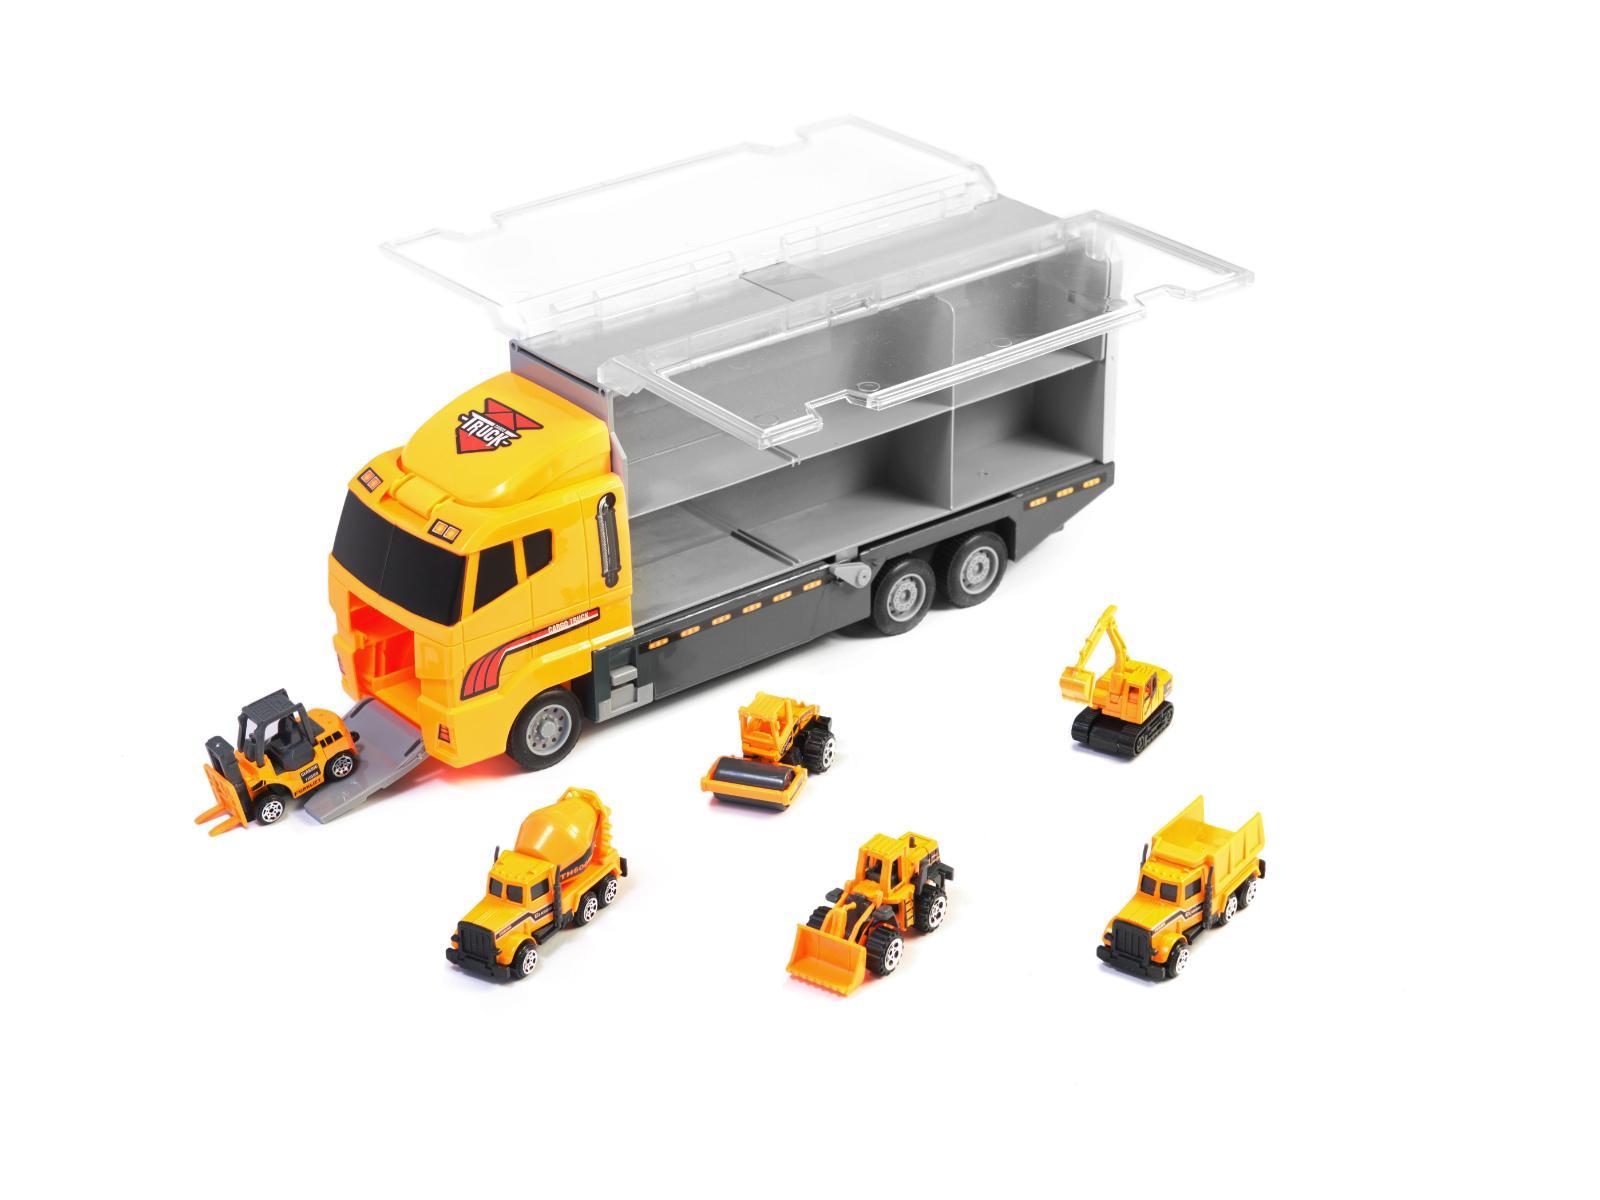 Transporter ciężarówka TIR wyrzutnia + metalowe auta maszyny budowlane zabawka dla dzieci 15x10x36cm 7 Full Screen